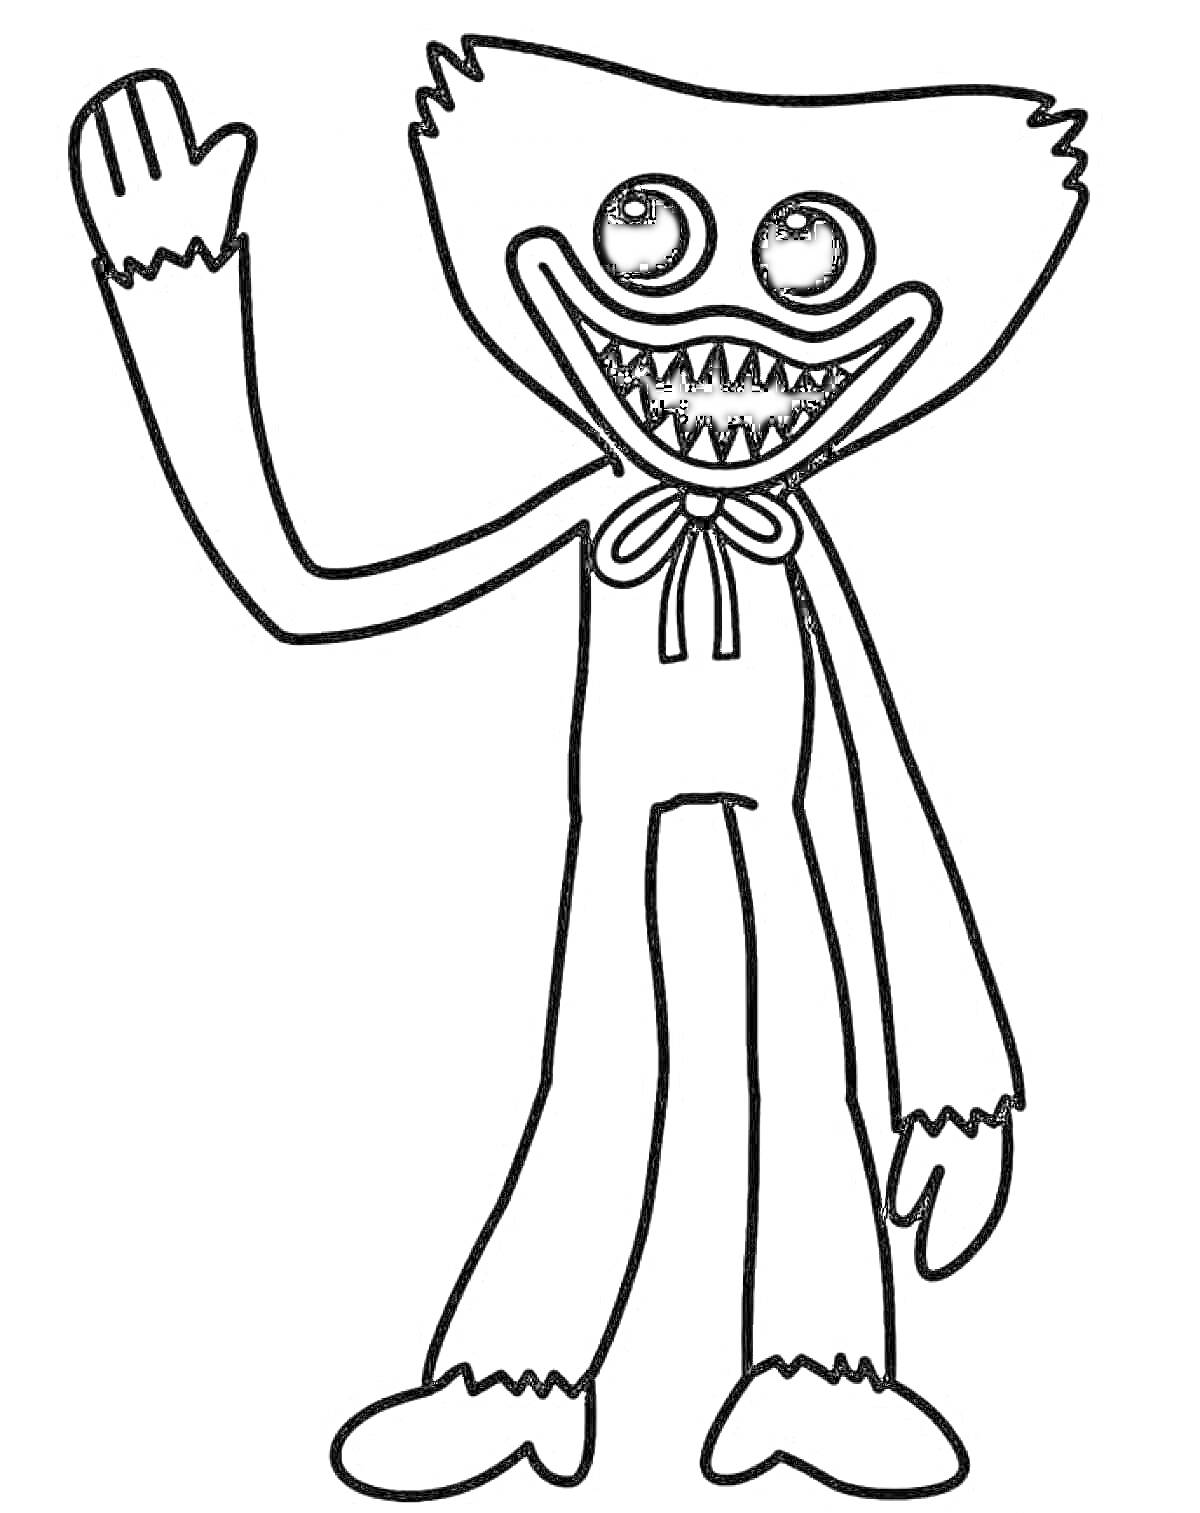 Раскраска Персонаж из Poppy Playtime с кукольным телом и острыми зубами, поднимающий руку